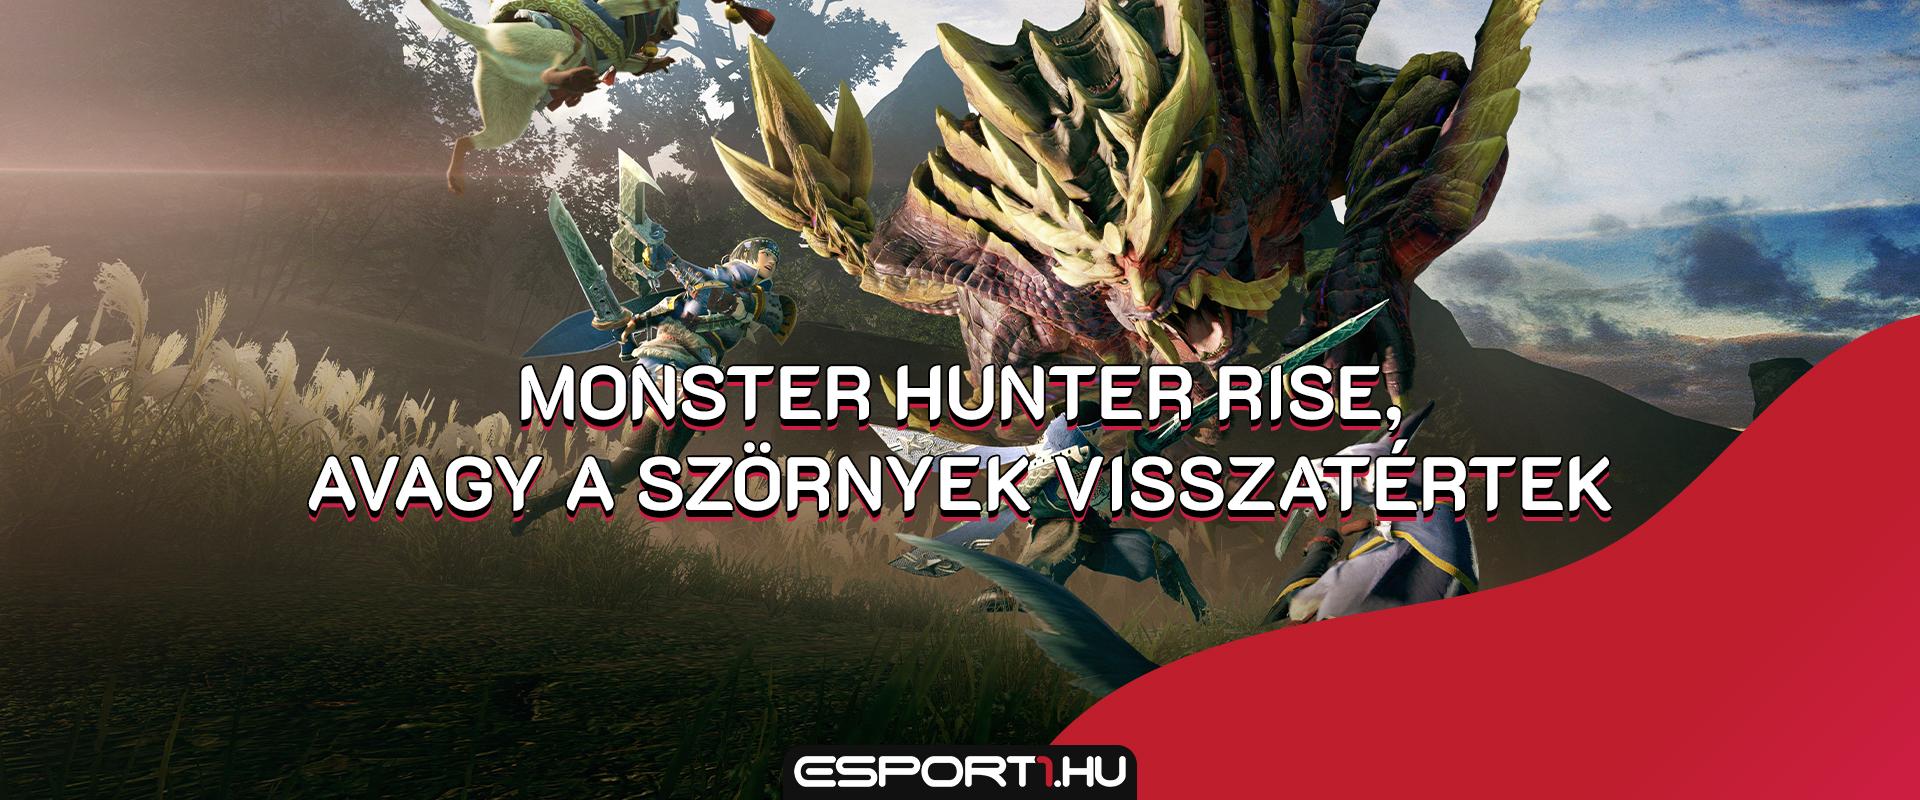 Gaming: Monster Hunter Rise teszt, avagy a szörnyvadászat még mindig jó móka